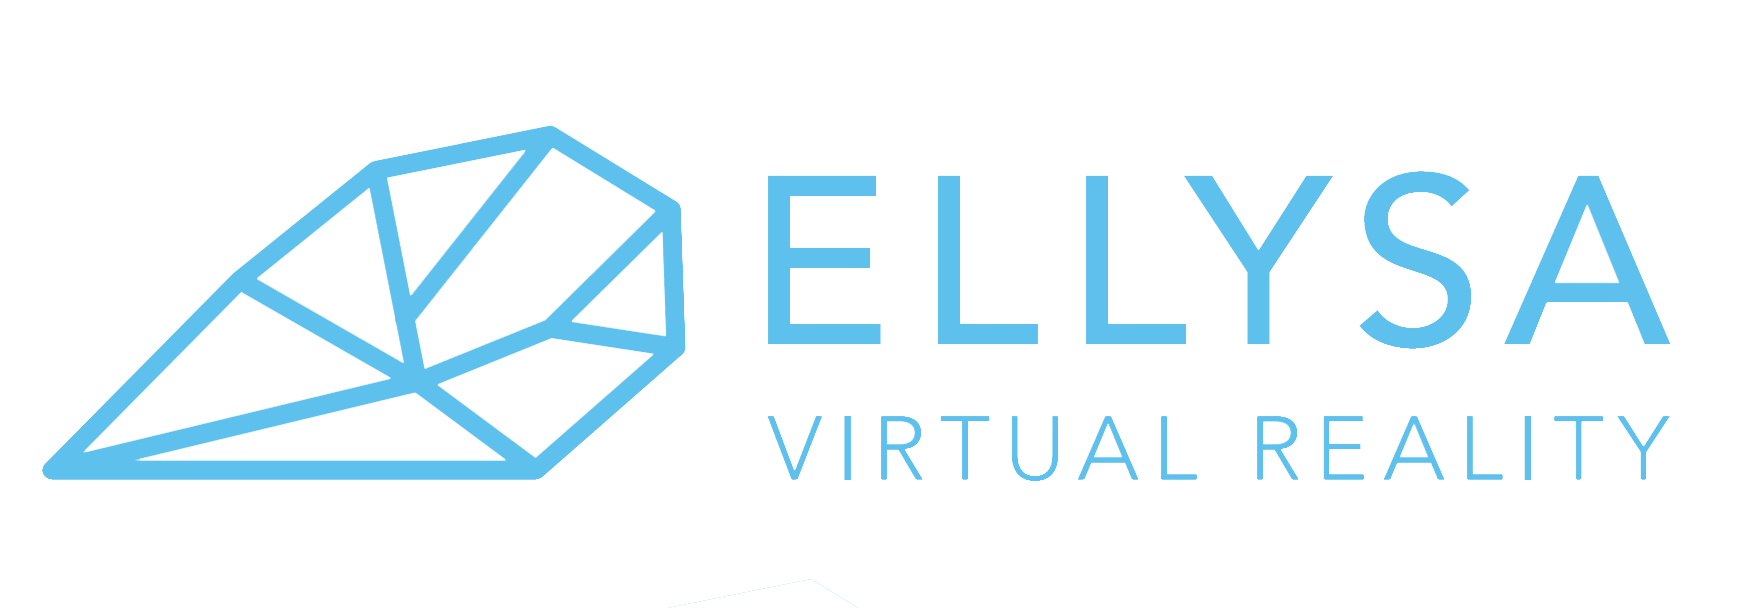 ellysa VR logo trans.jpg